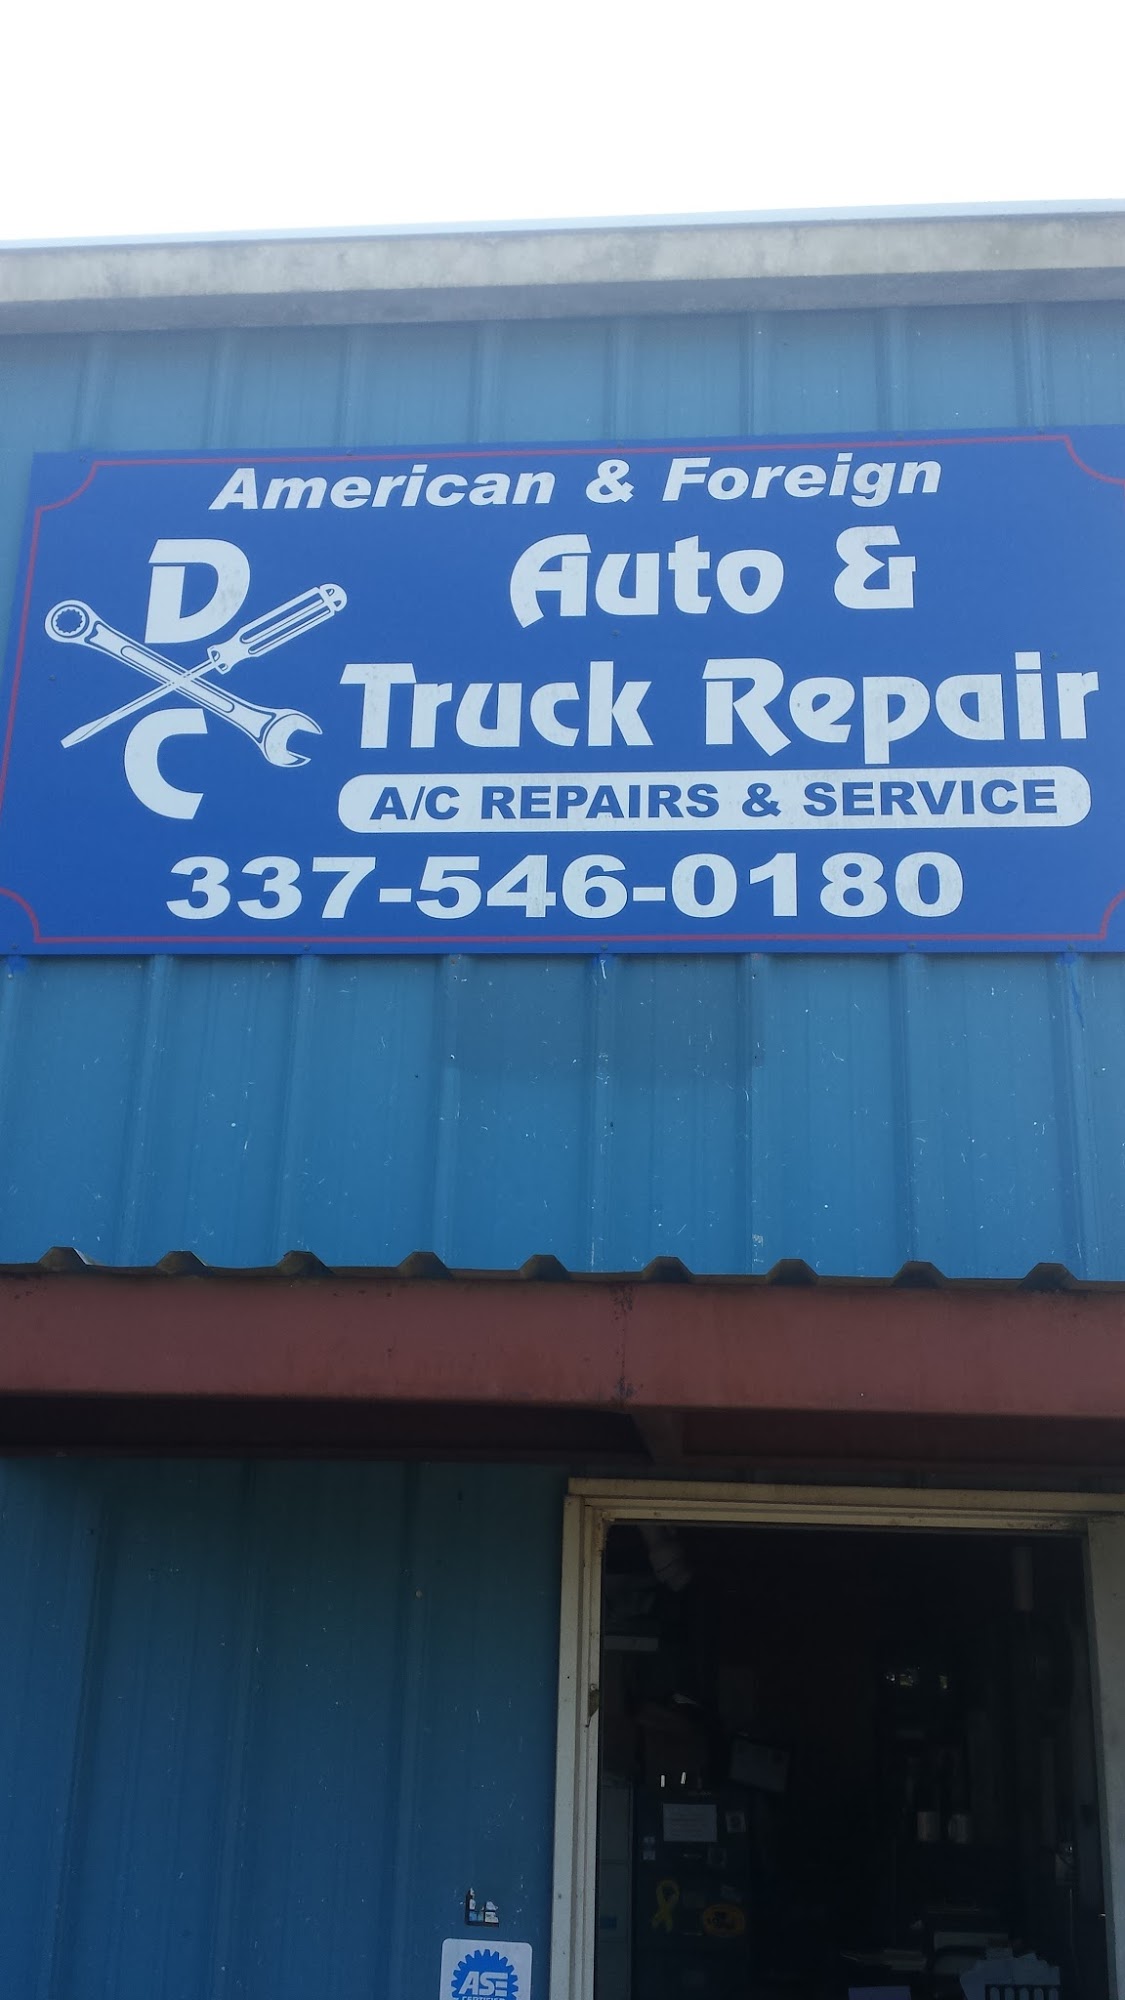 D C Auto & Truck Repair